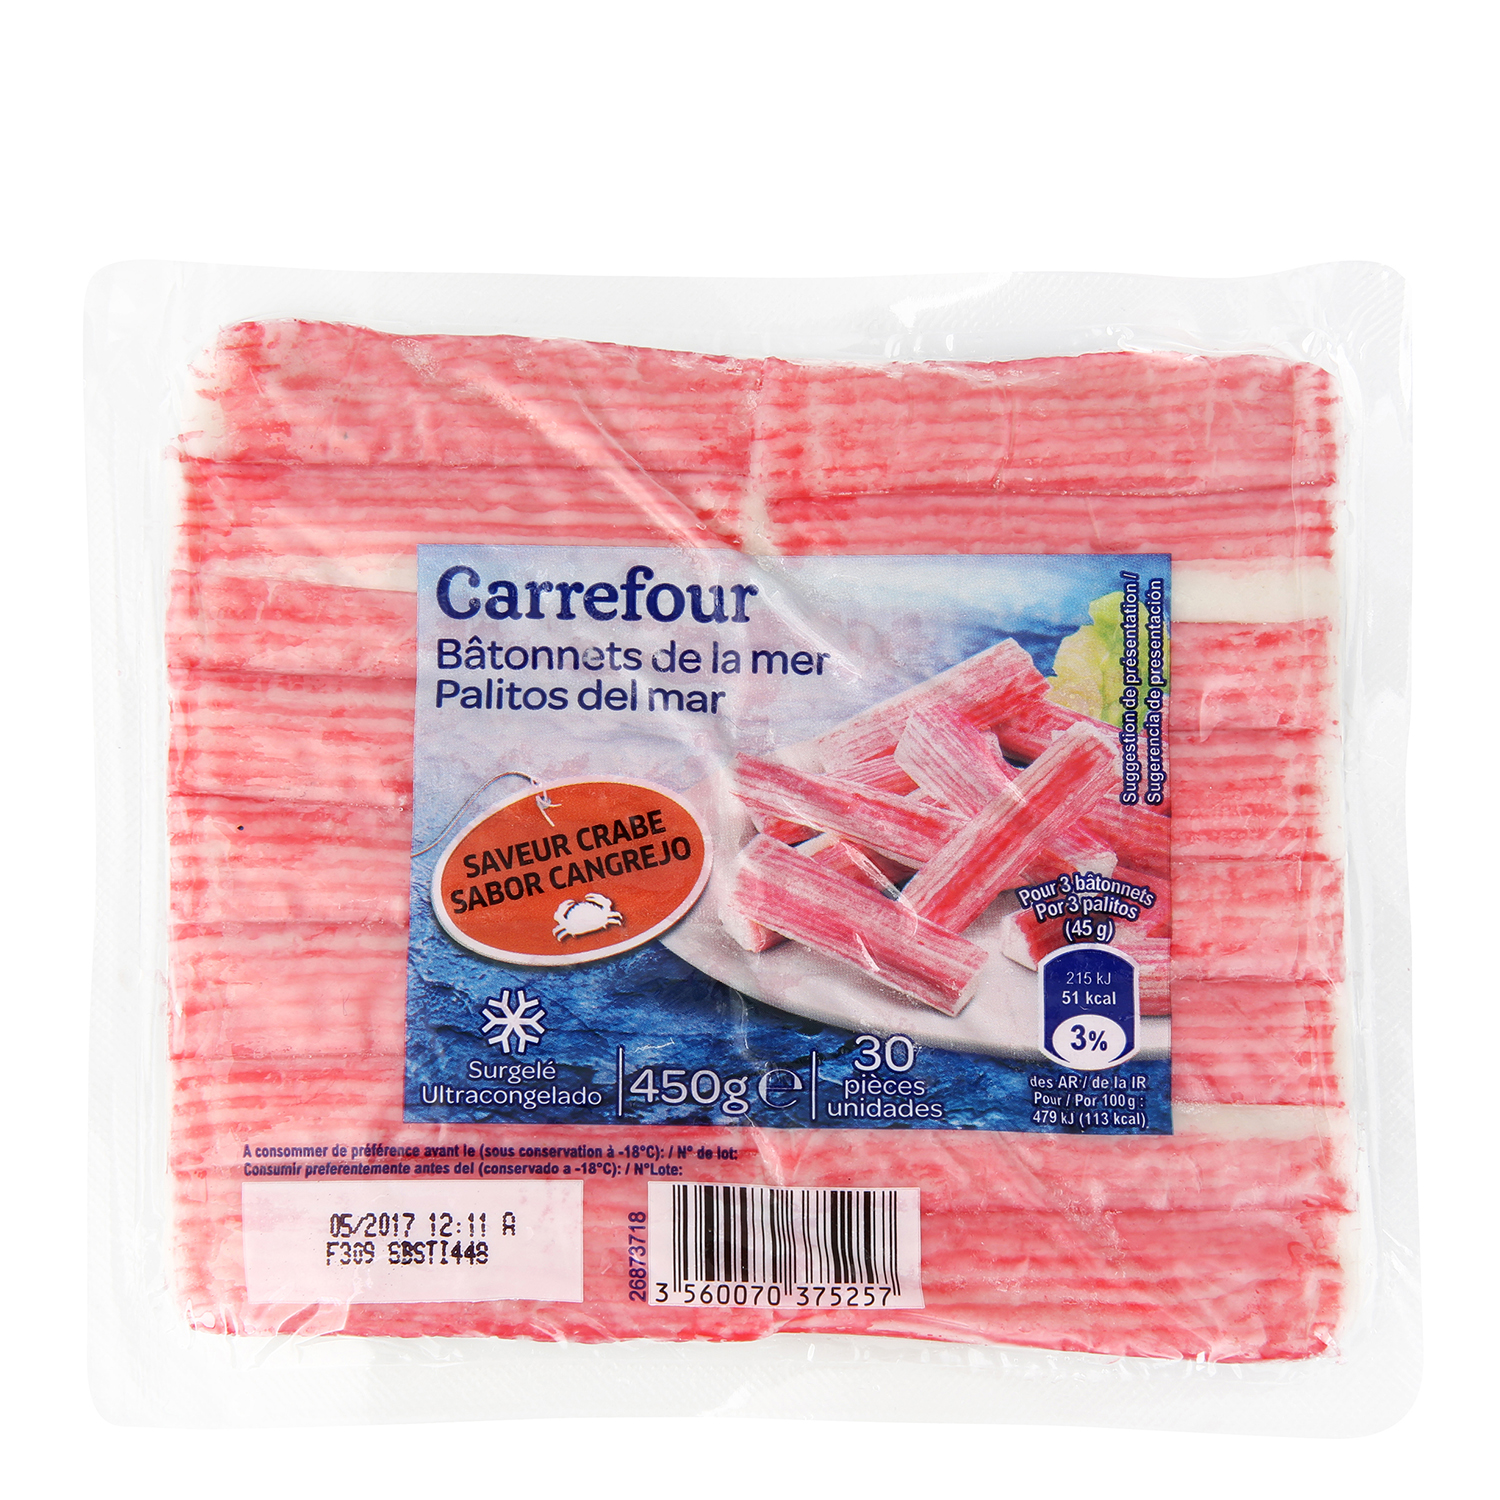 Palitos de mar Carrefour 450 g. Carrefour - Carrefour supermercado compra online